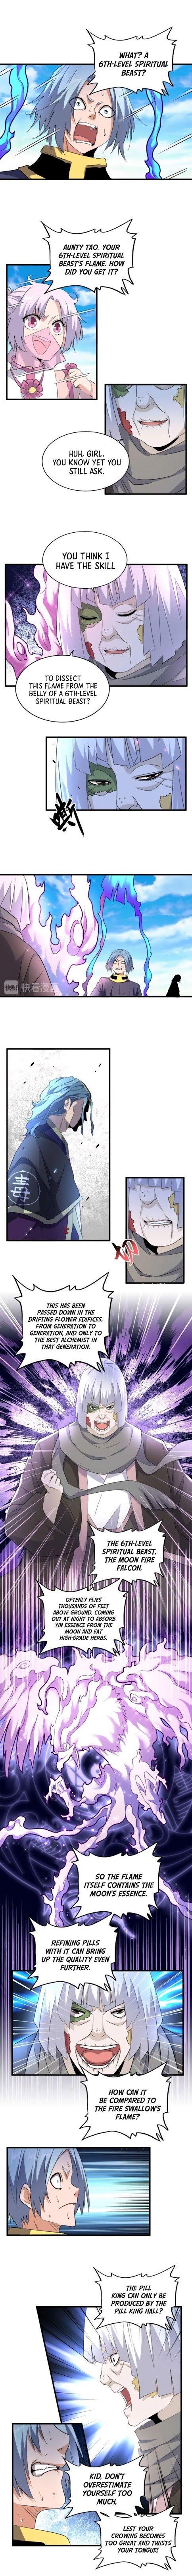 Magic Emperor Chapter 178 page 6 - Mangakakalot